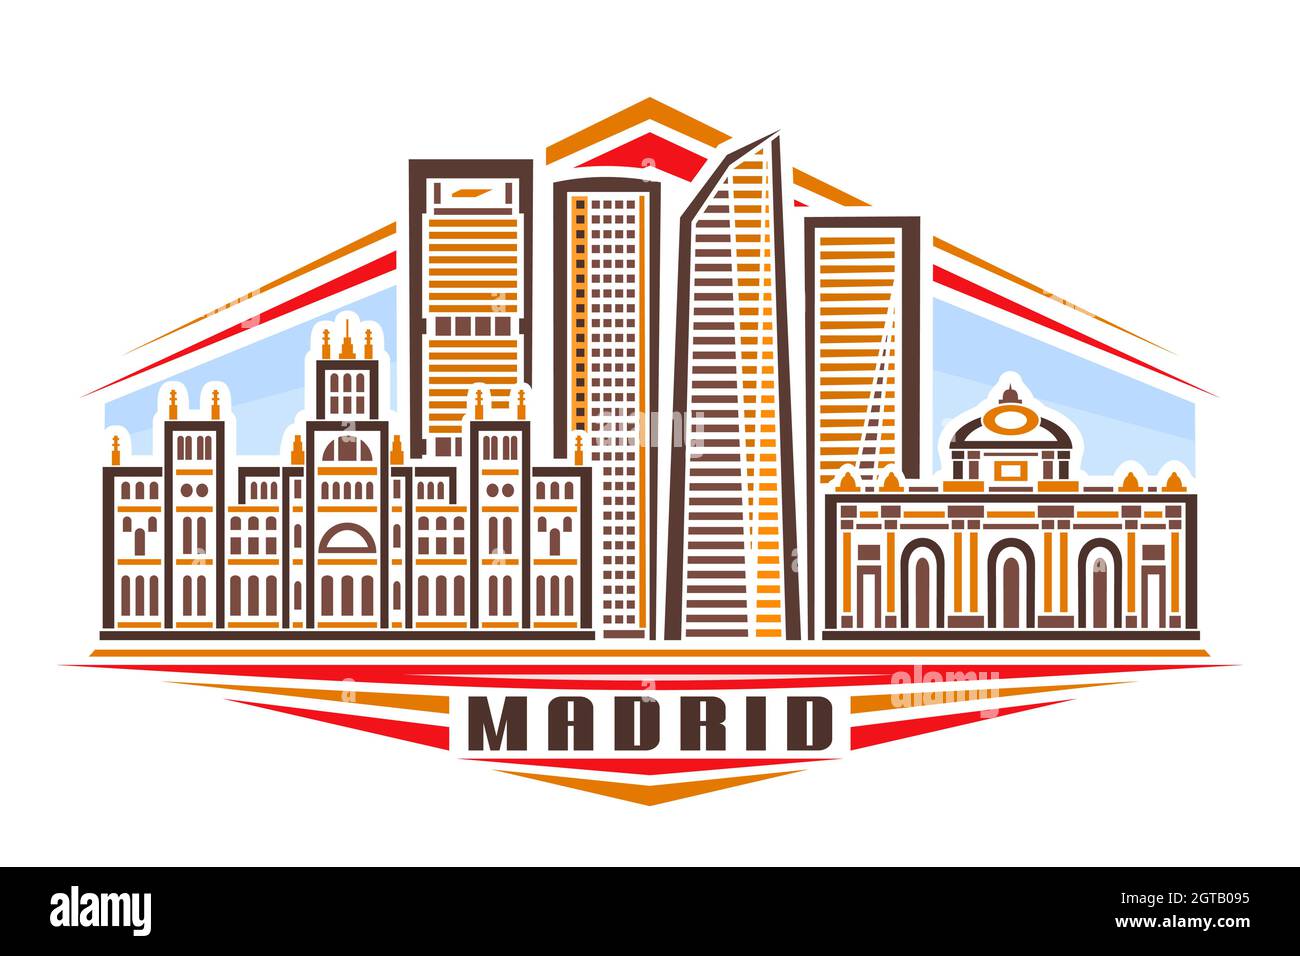 Illustrazione vettoriale di Madrid, poster orizzontale con design lineare paesaggio cittadino europeo di madrid su sfondo cielo di giorno, concetto di arte urbana con deco Illustrazione Vettoriale